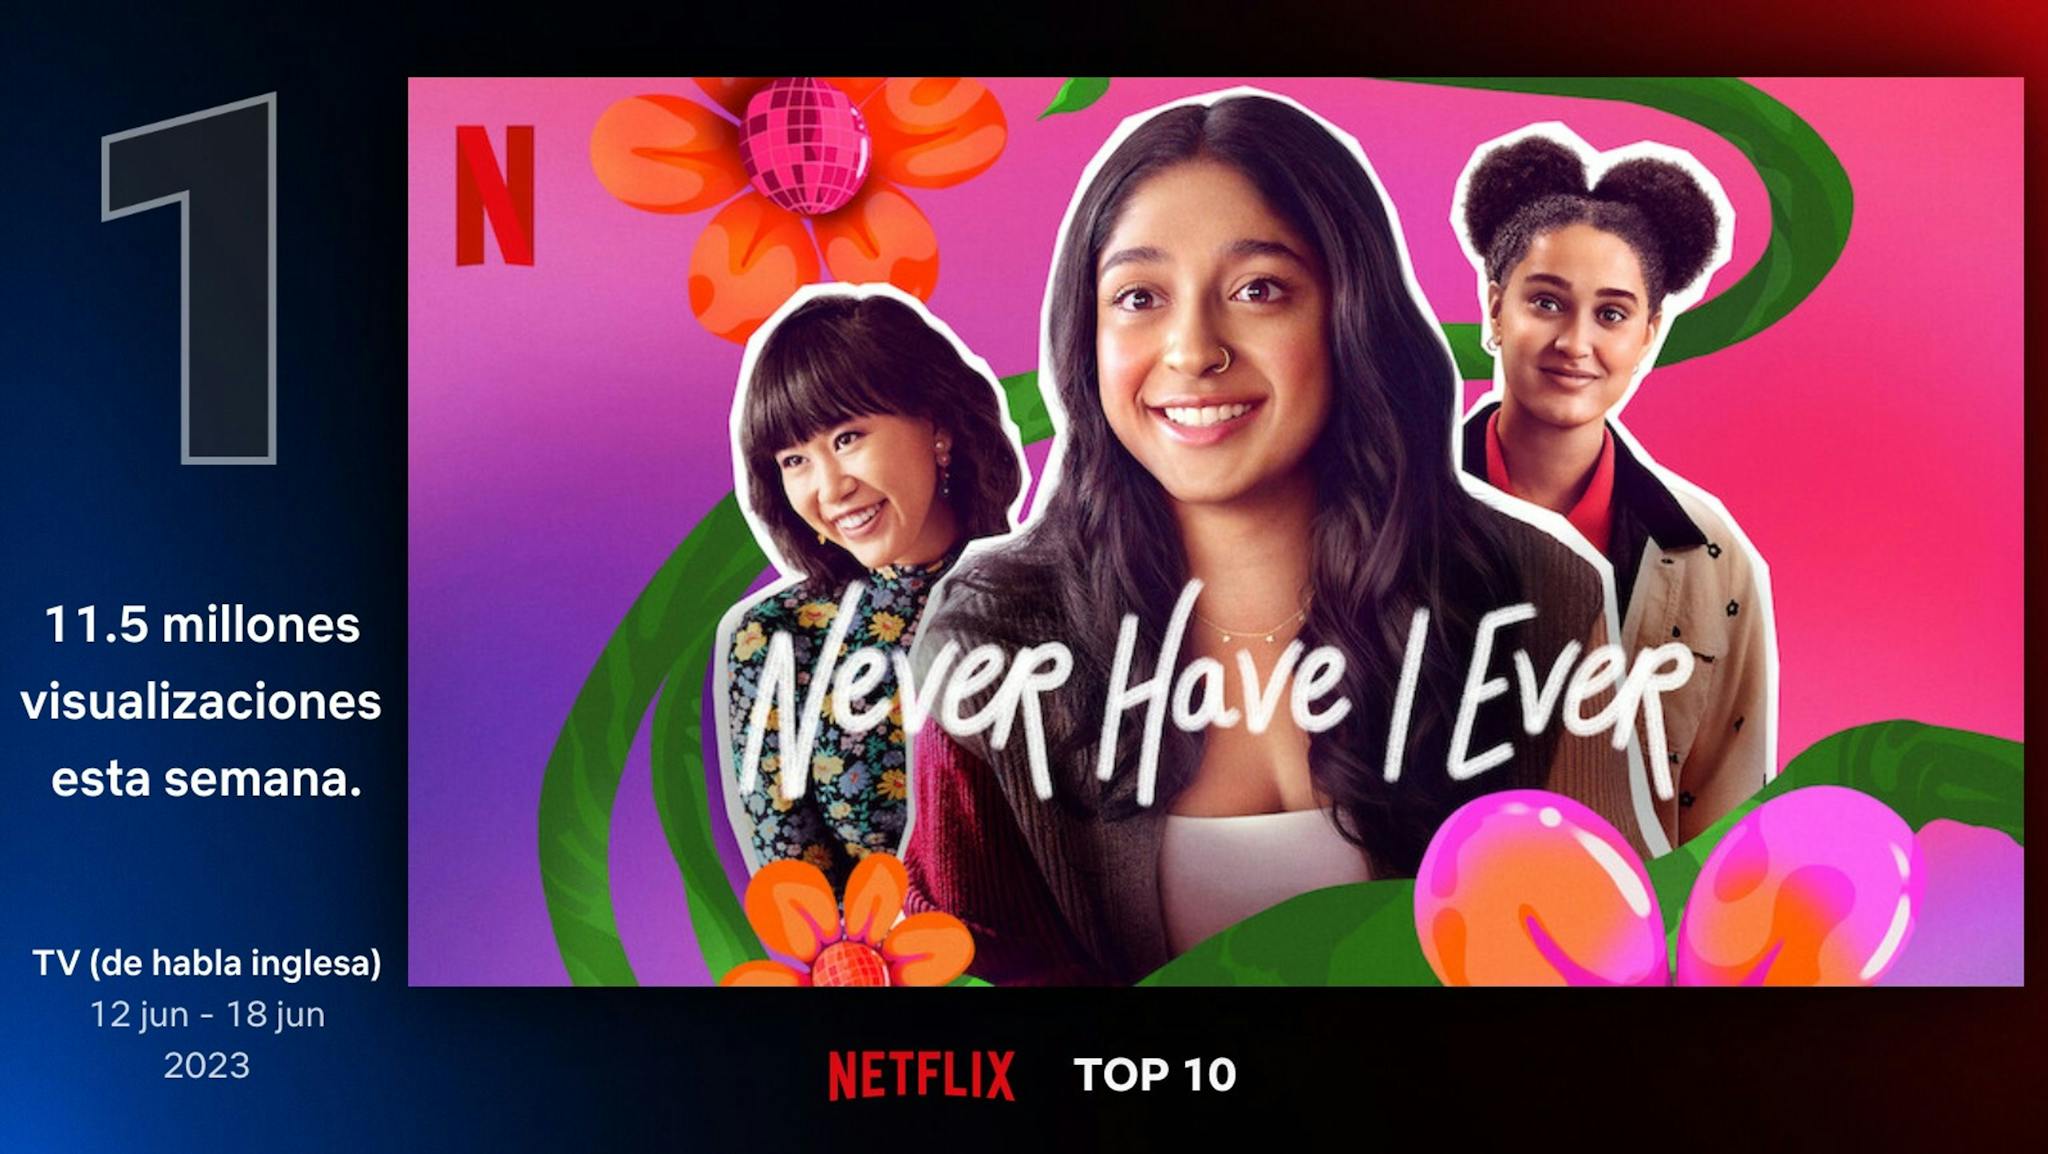 Imagen de las visualizaciones de la cuarta temporada de 'Yo nunca' en Netflix en la semana de su estreno.